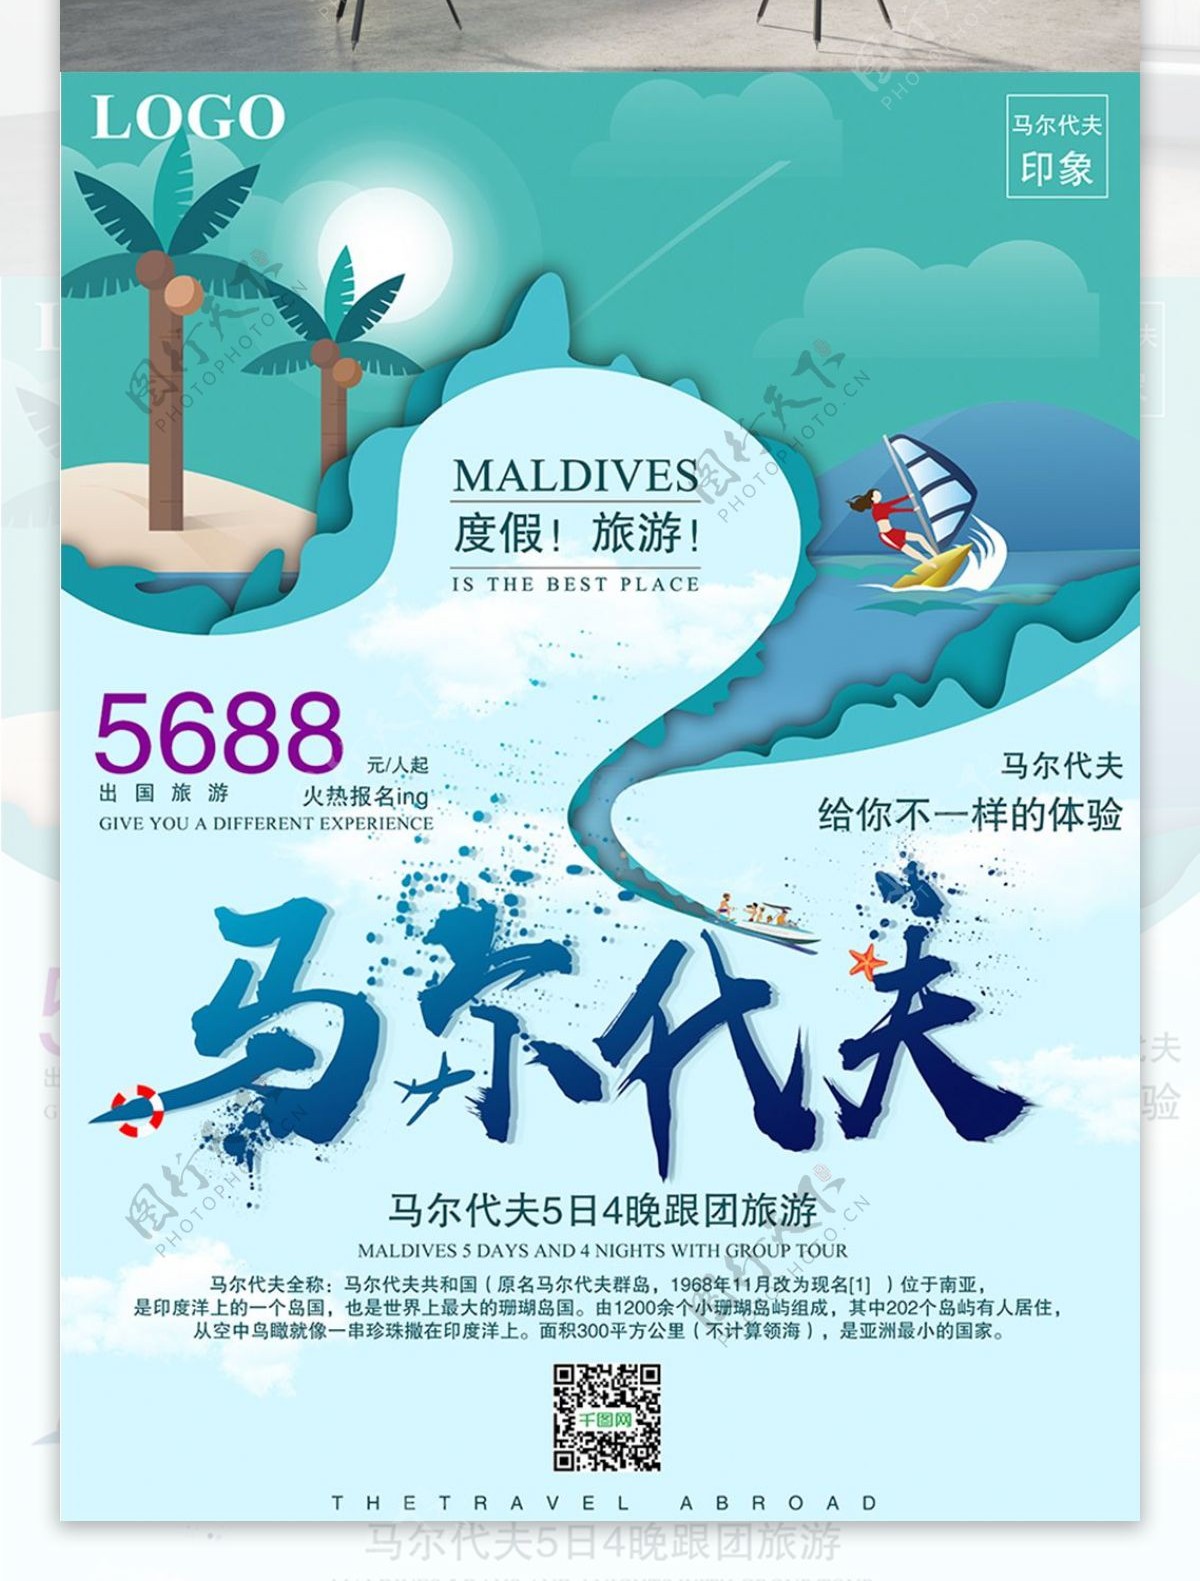 简约清新马尔代夫旅游宣传海报